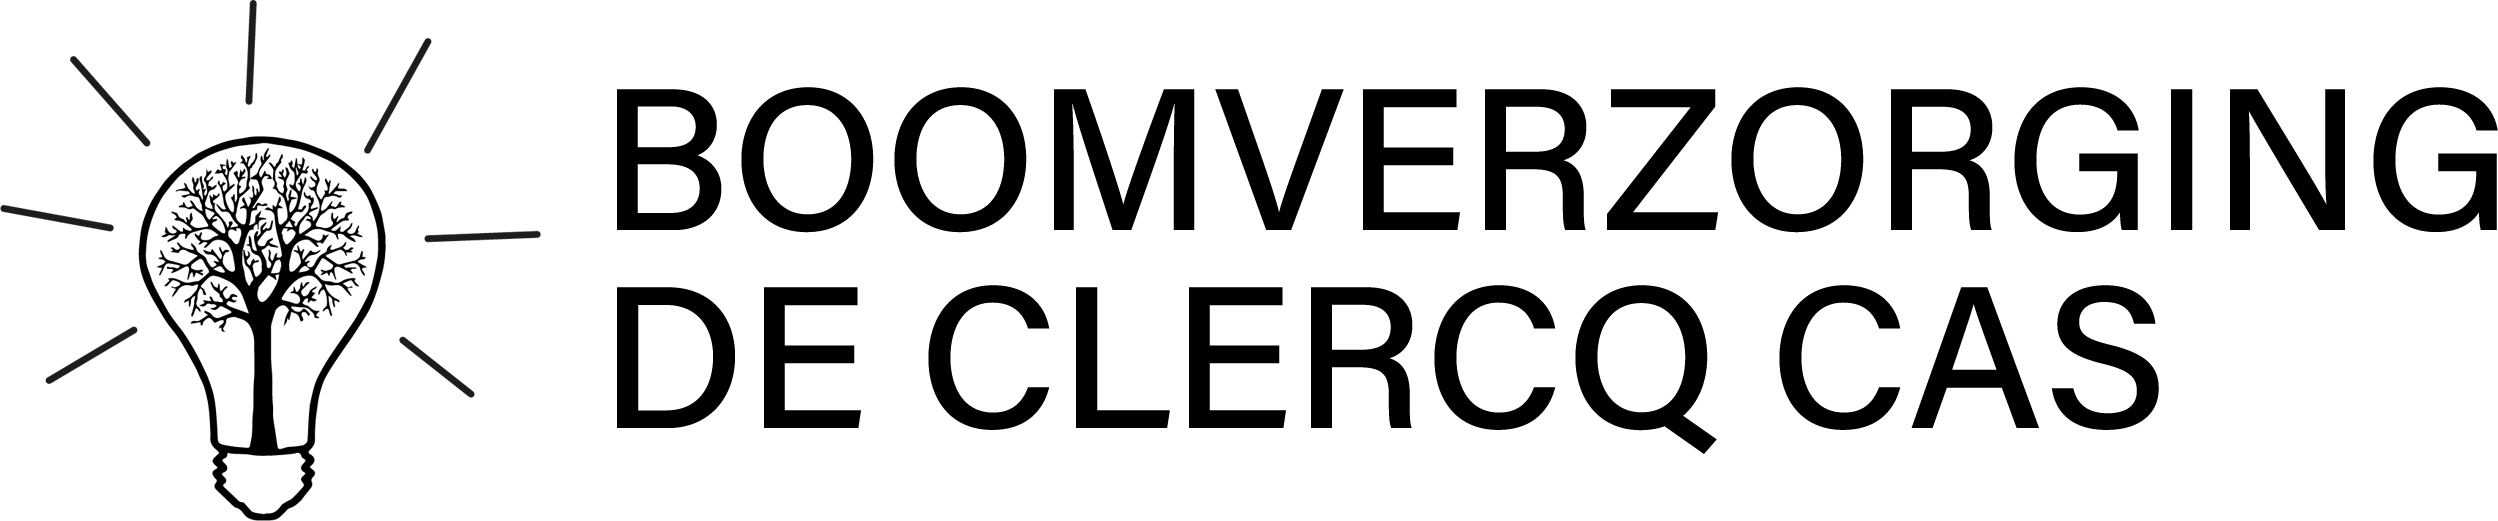 horisontal logo black